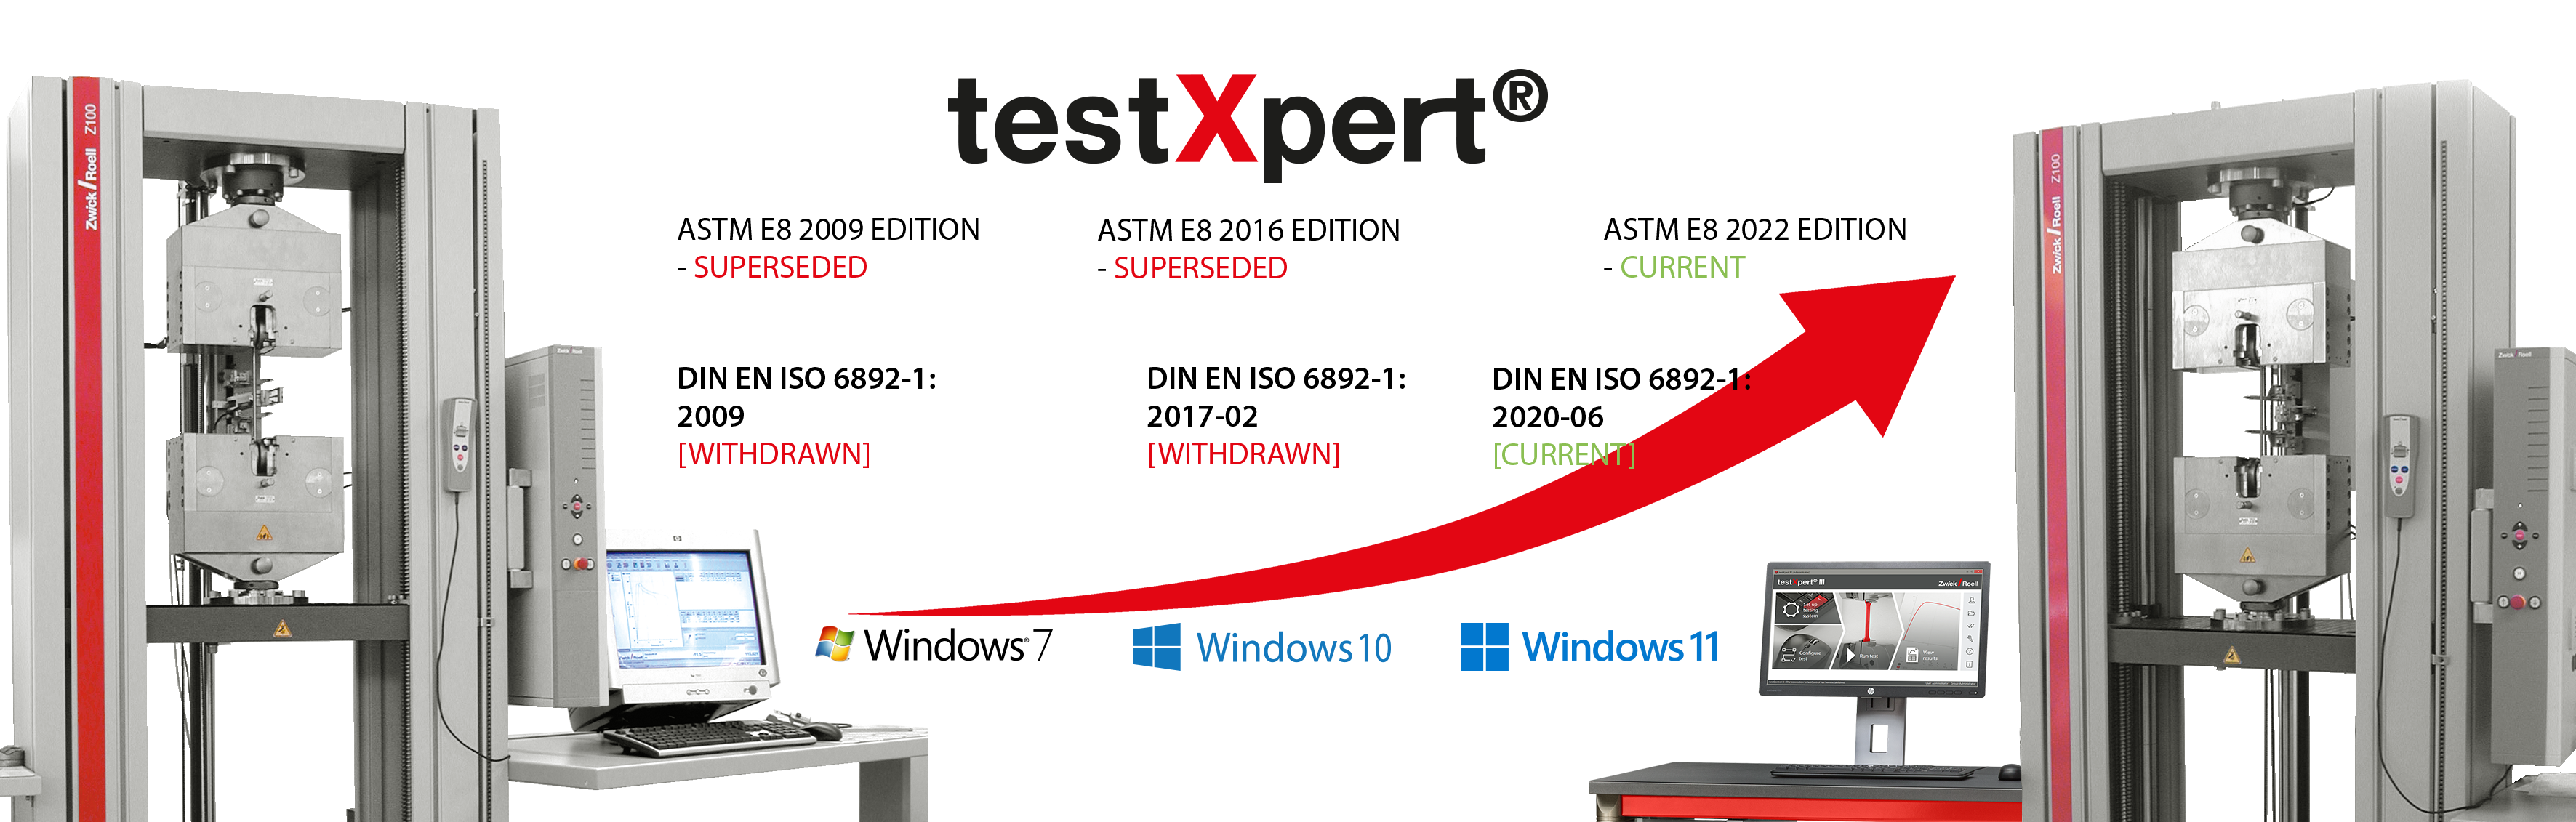 testXpert идет в ногу со временем независимо от того, меняется ли какой-либо стандарт или внедряется новая операционная система